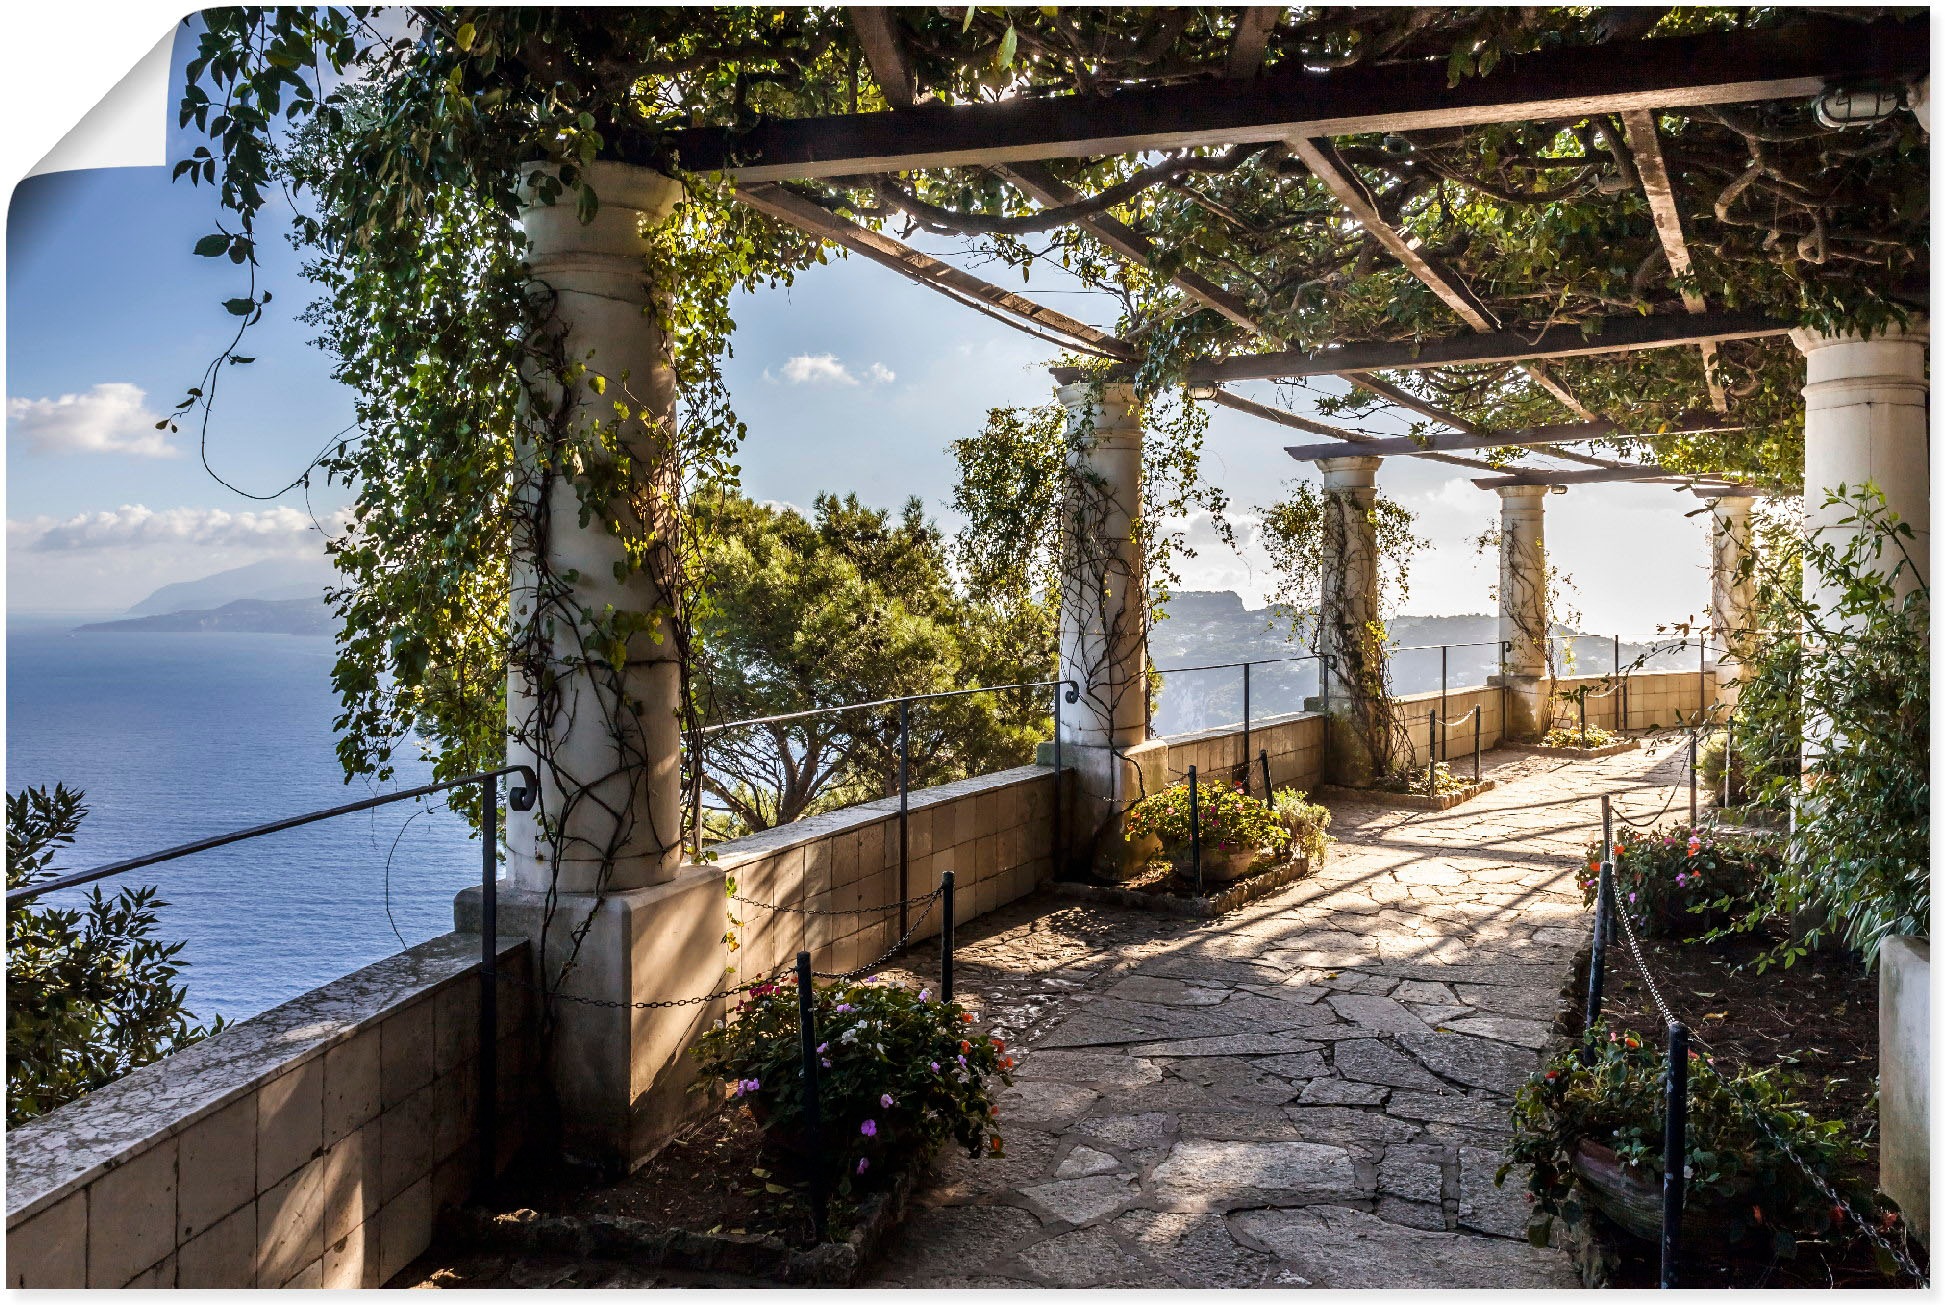 Artland Wandbild »Garten der Villa San Michele auf Capri«, Gebäude, (1 St.)  kaufen bei OTTO